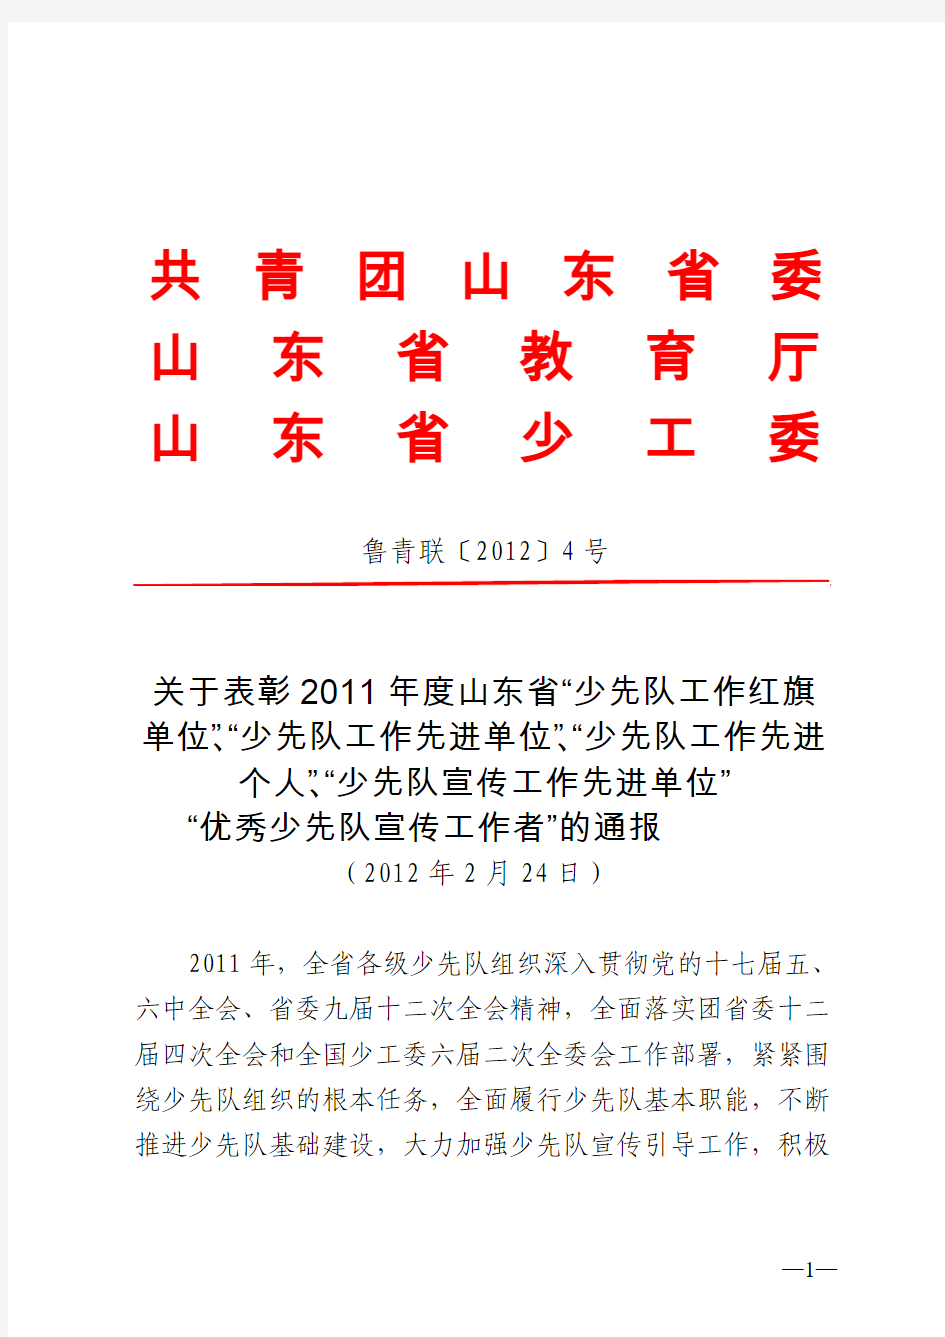 关于表彰2011年度山东省“少先队工作红旗单位”、“少先队工作先进单位”和“少先队工作先进个人”的通报